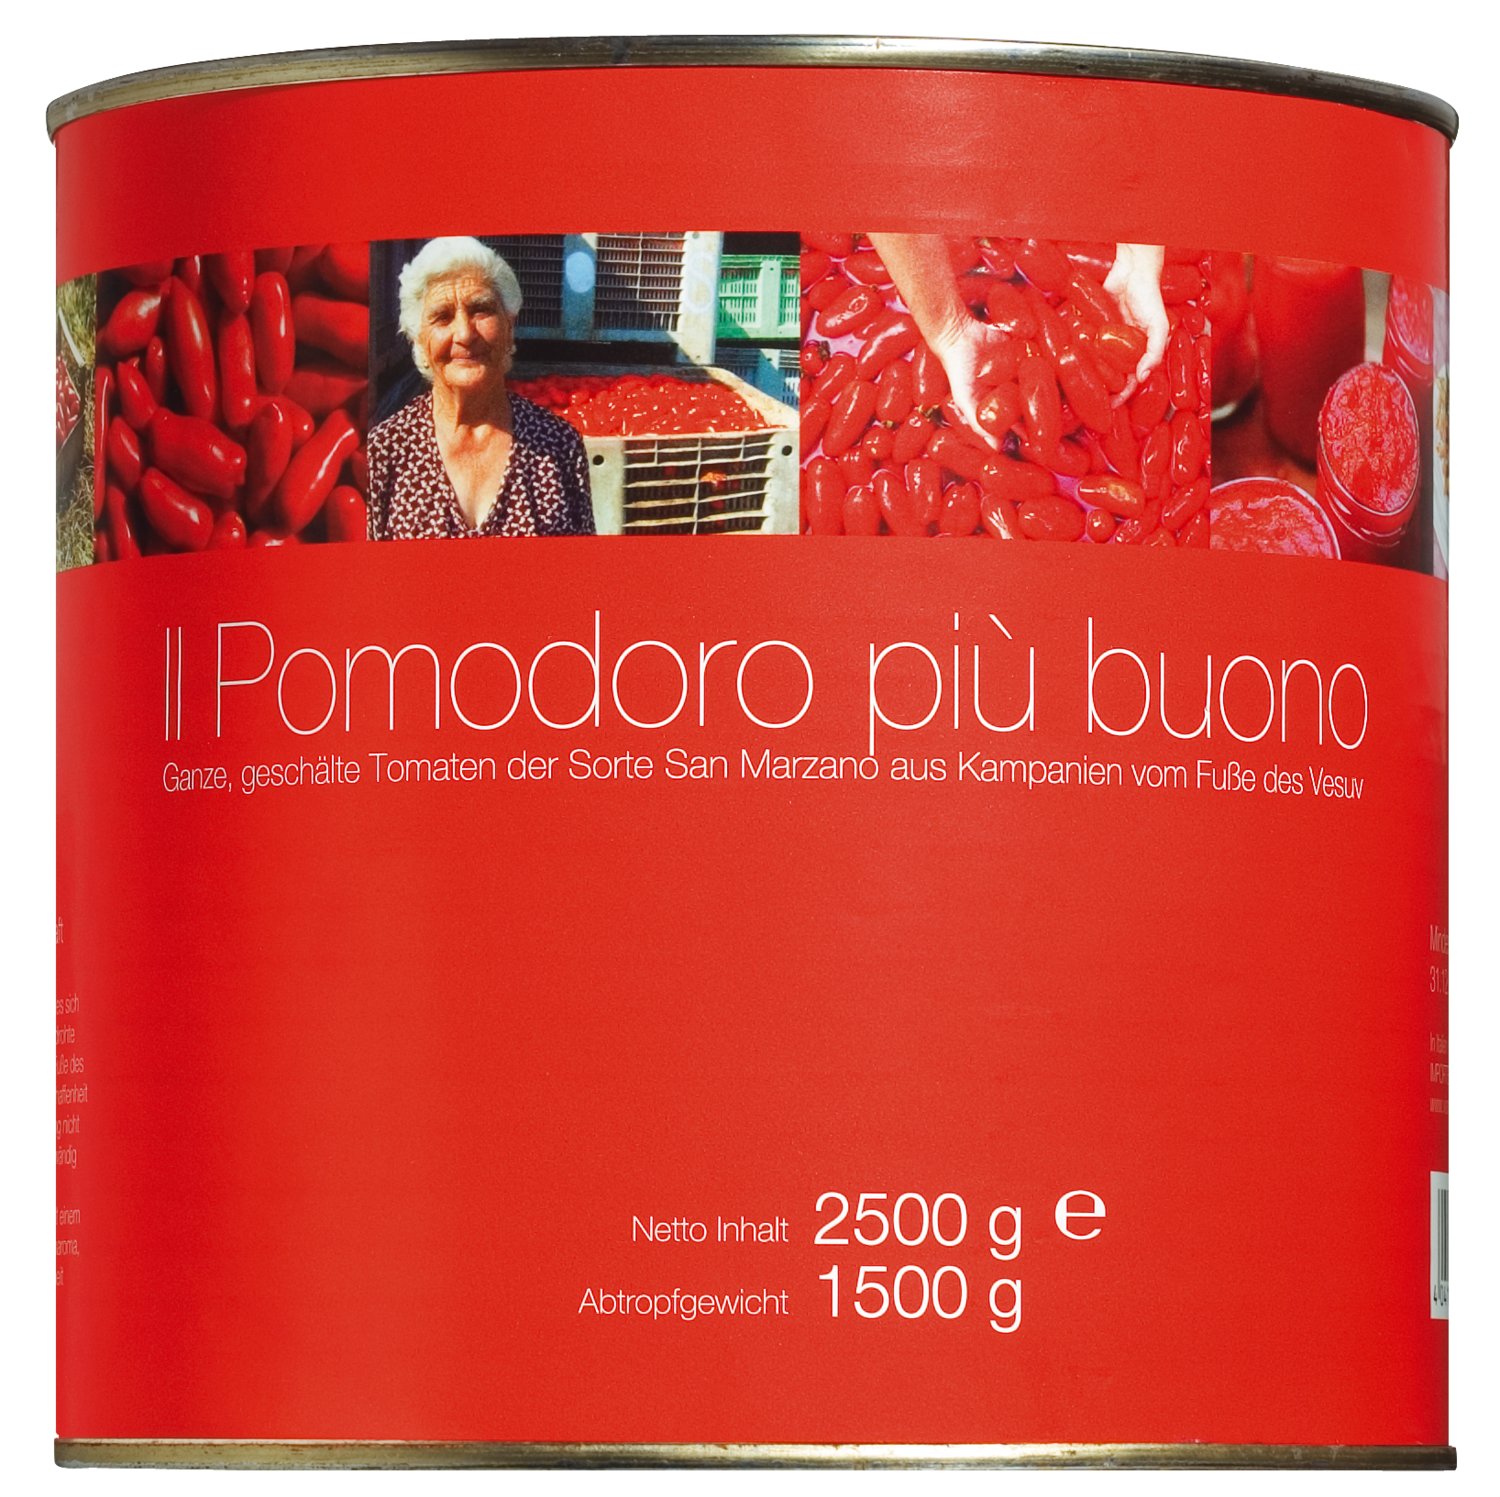 Il pomodoro più buono - Pomodori pelati di San Marzano, 6 x 2500 g Dose